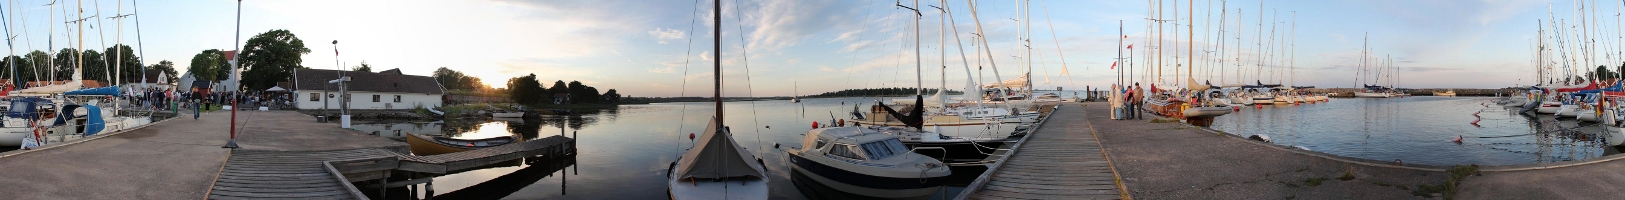 Hamnen i Kristianopel 360 grader